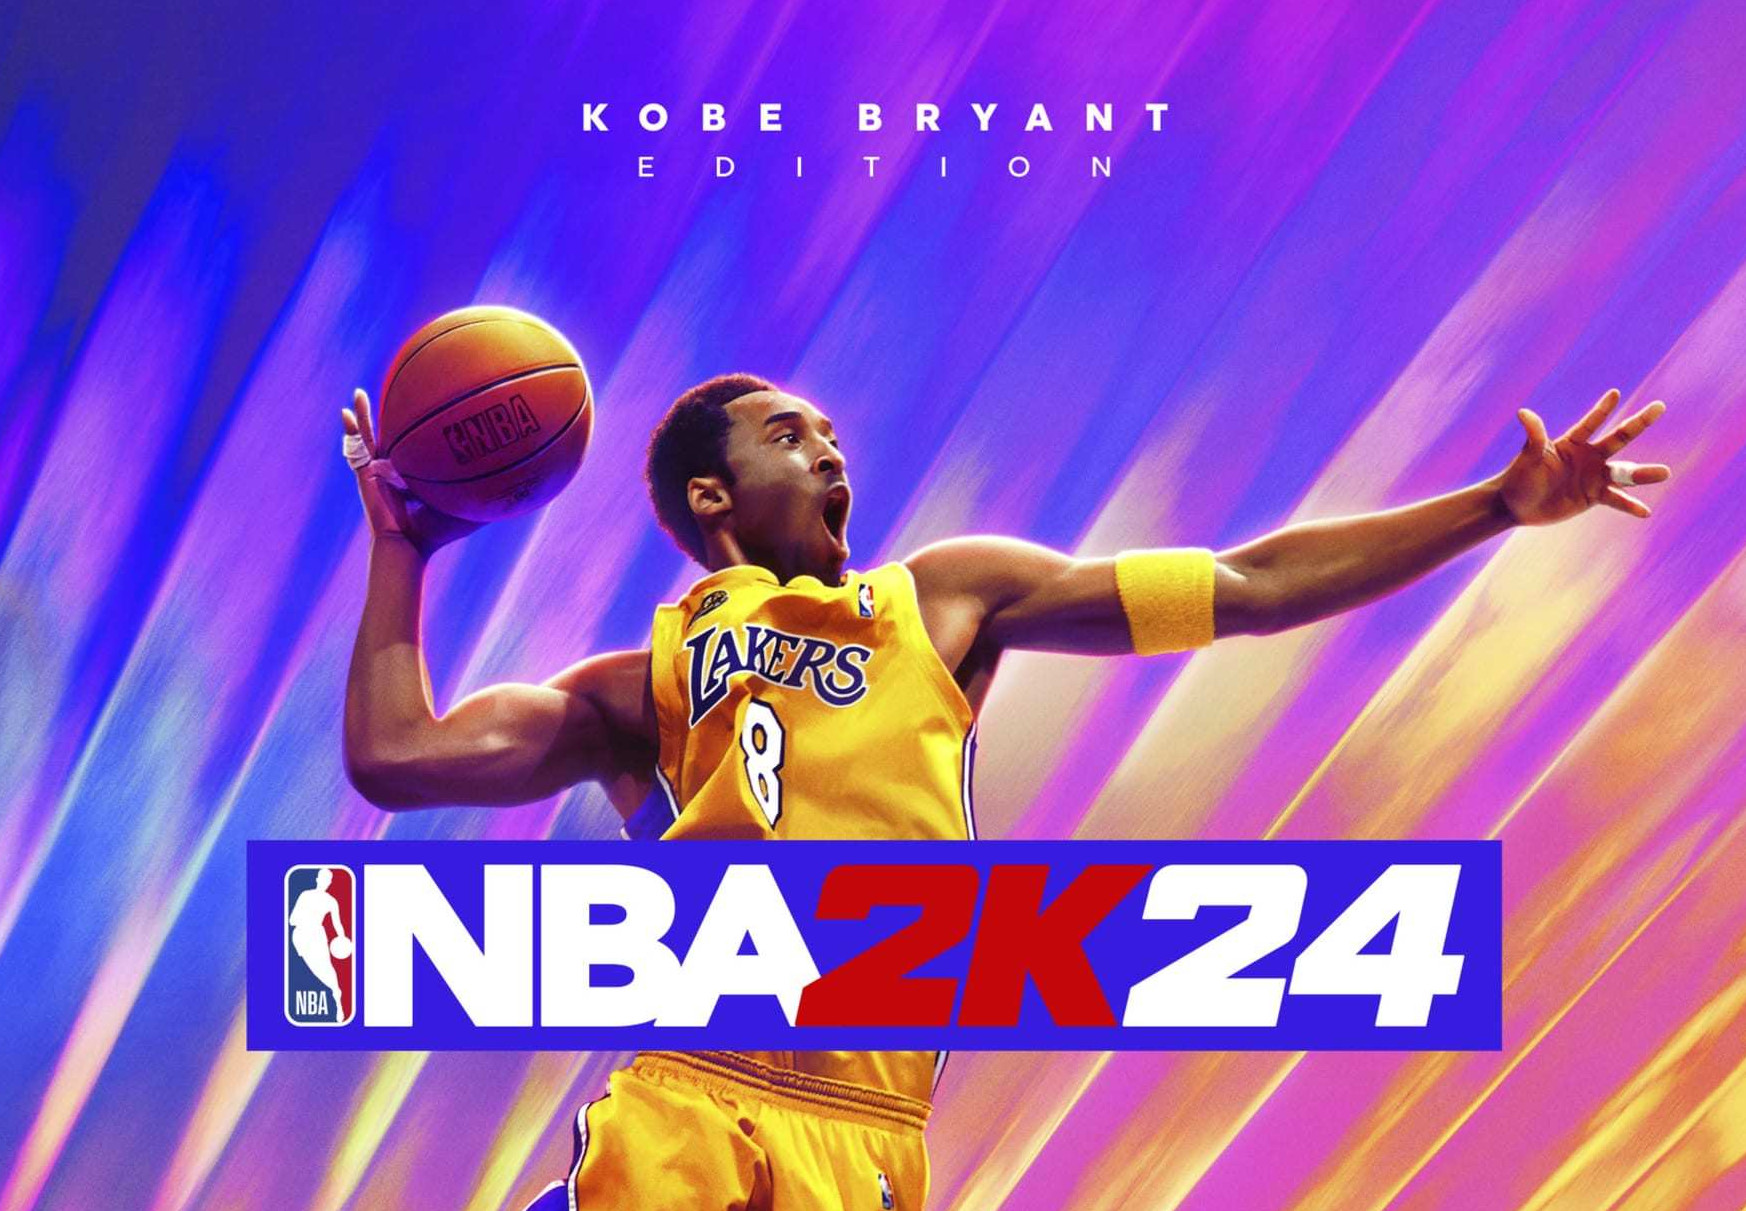 NBA 2K24 Kobe Bryant Edition LATAM Steam CD Key